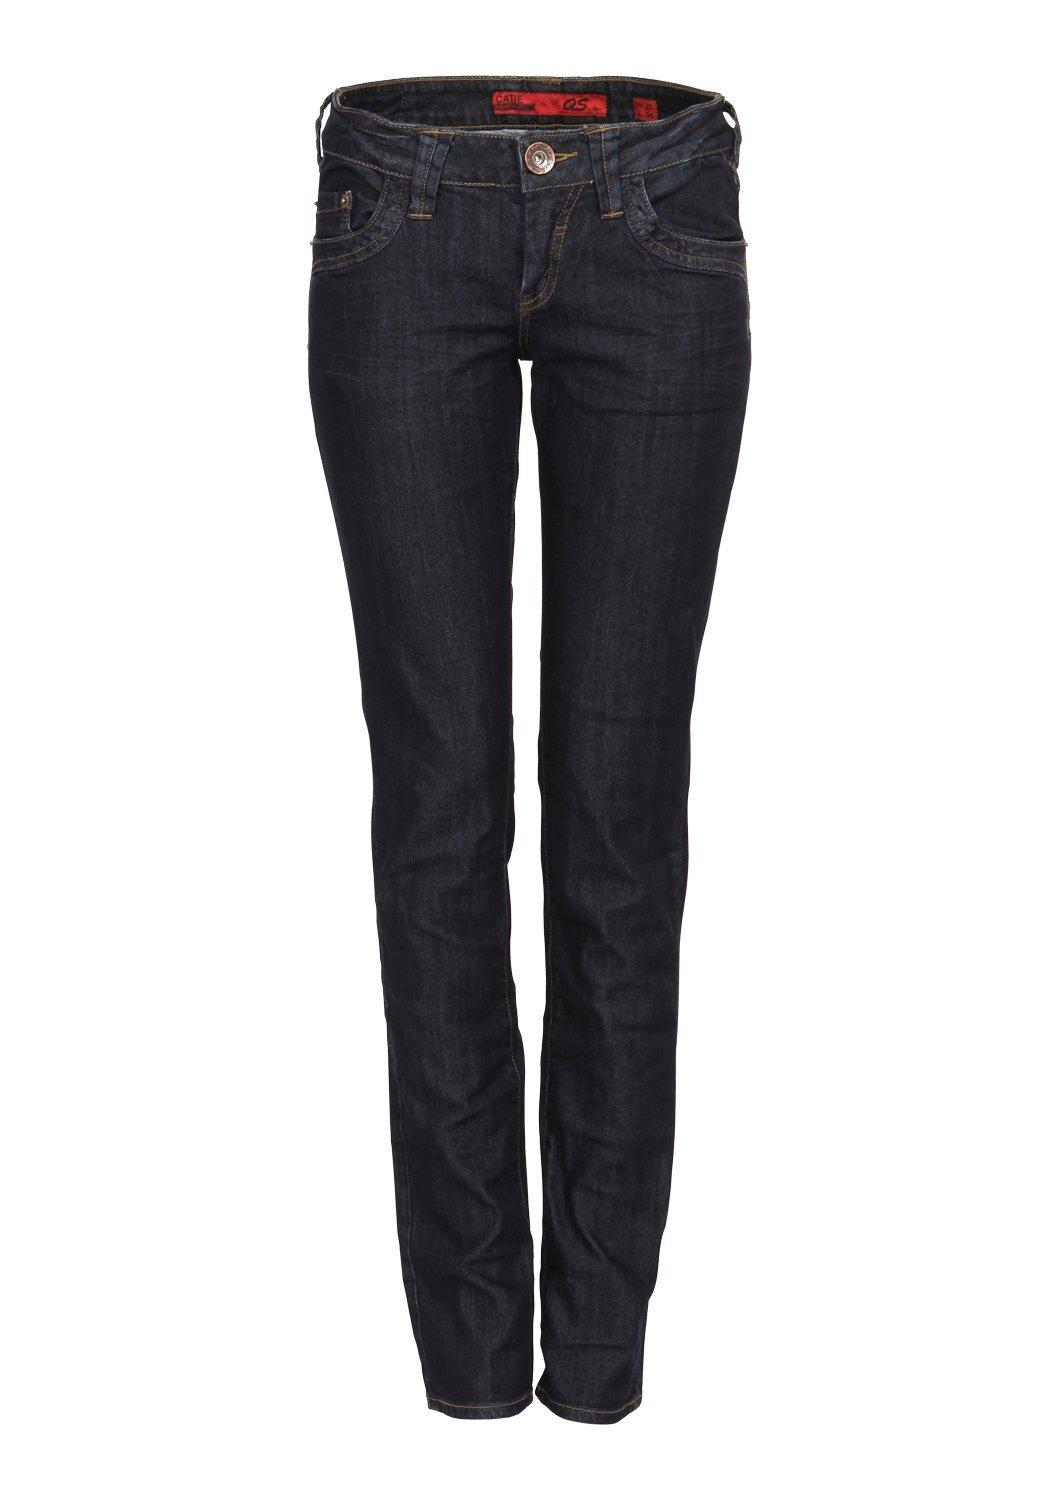 carhartt original fit jasper jeans